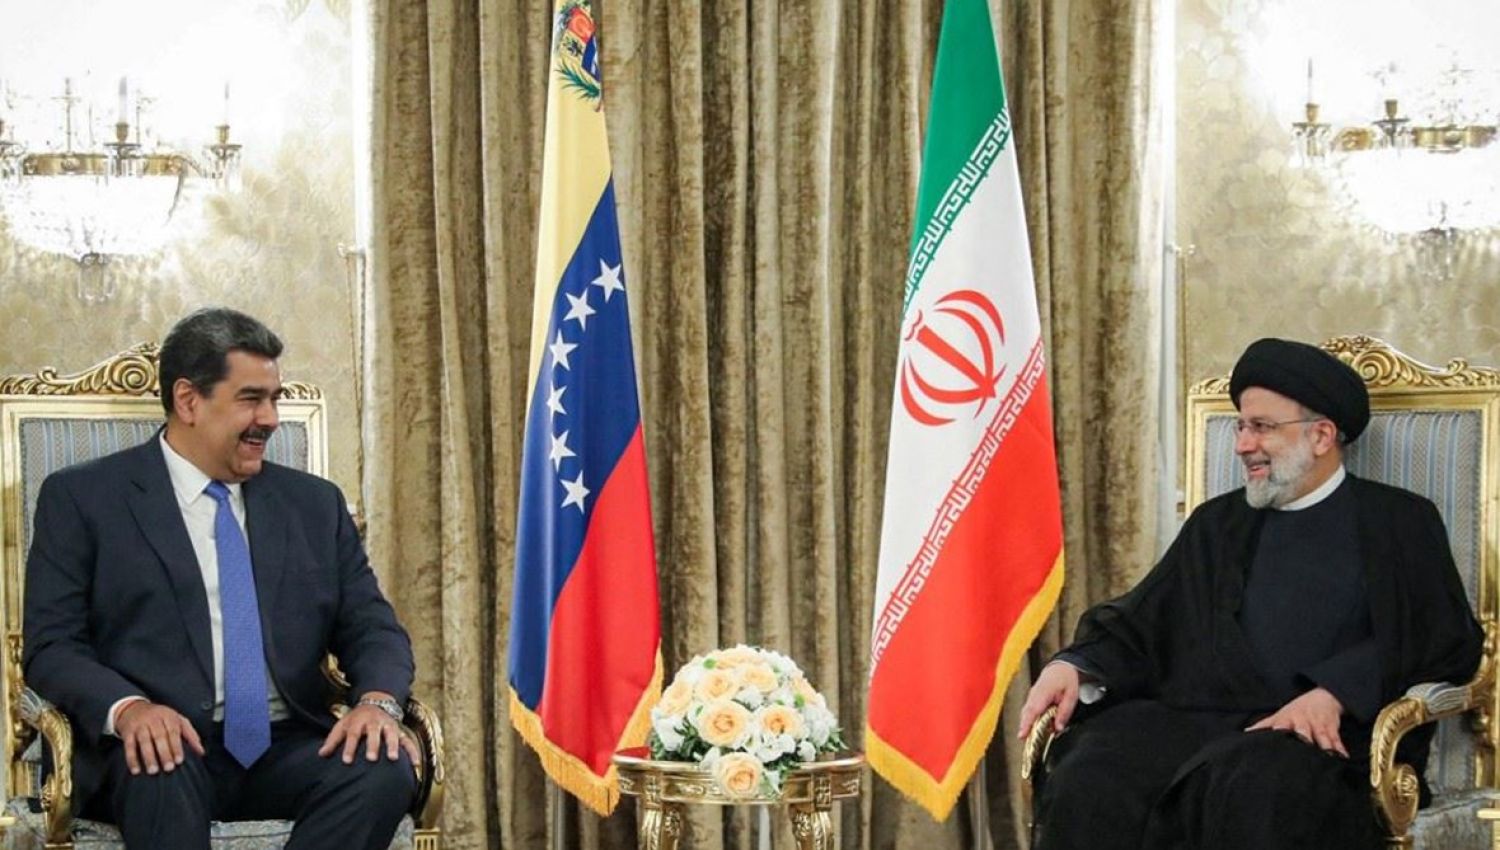 الرئيس مادورو في إيران: انتصار الصمود على أمريكا